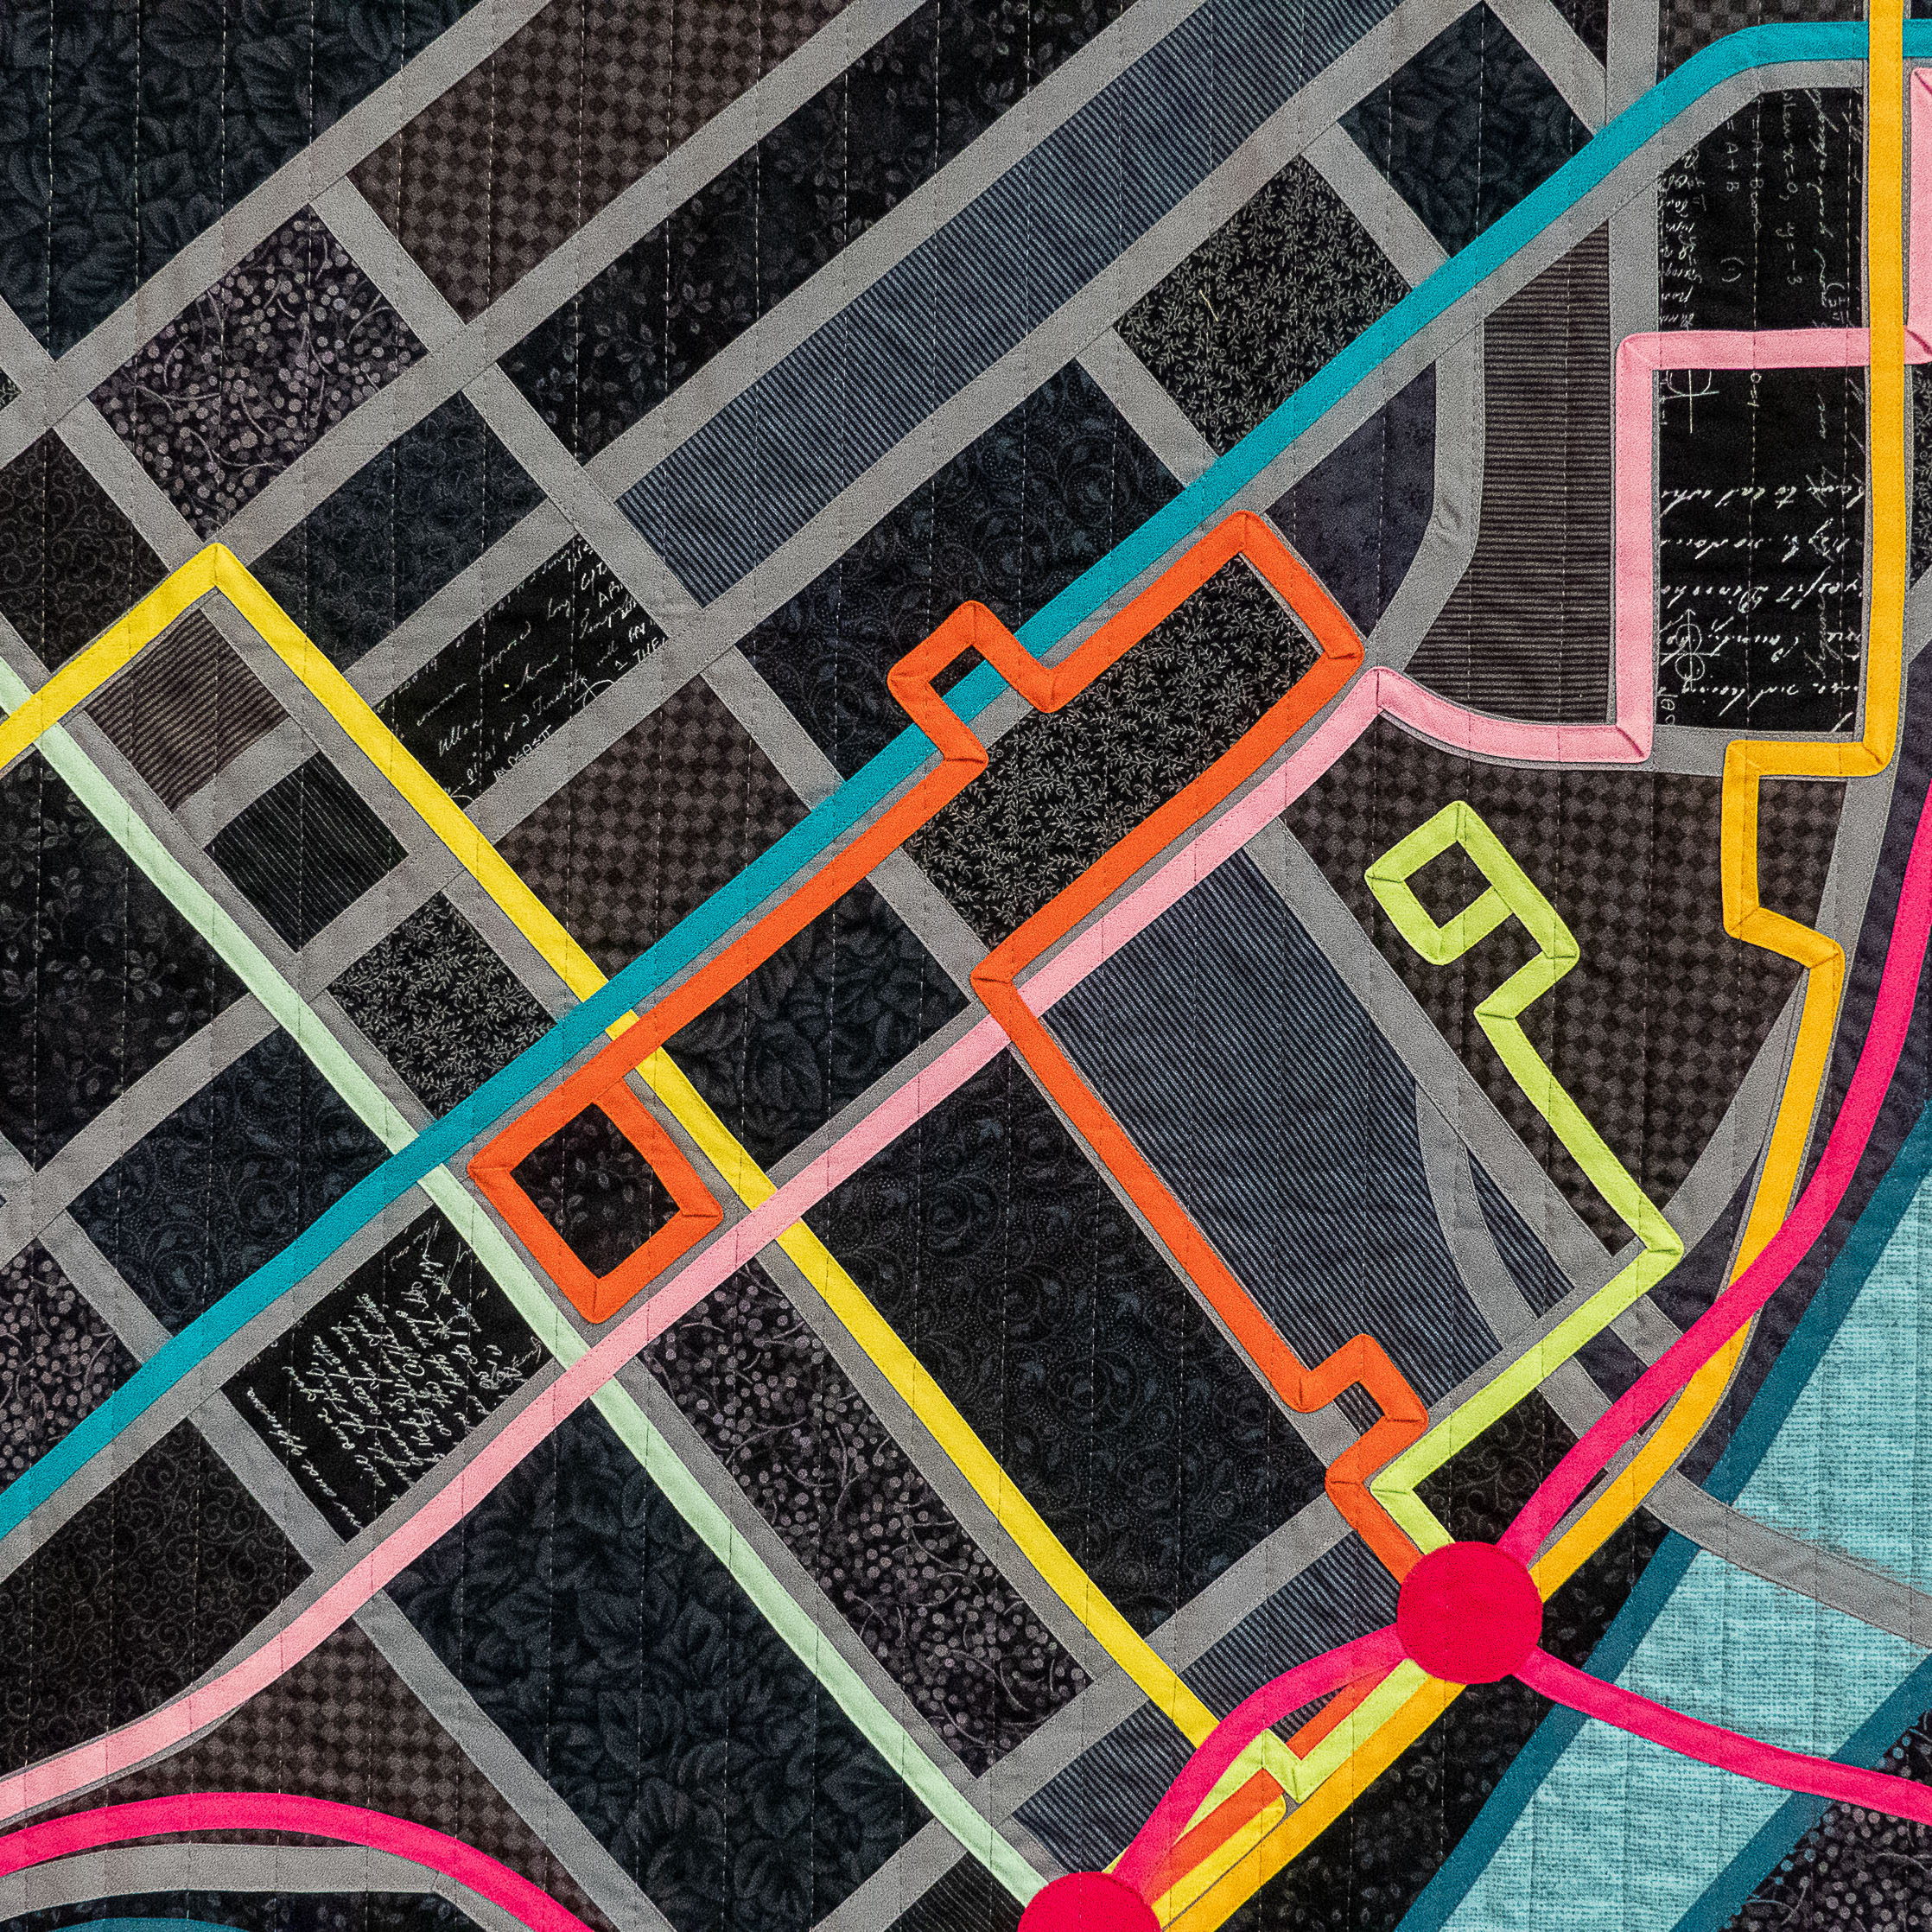 Detail of Transit Map quilt